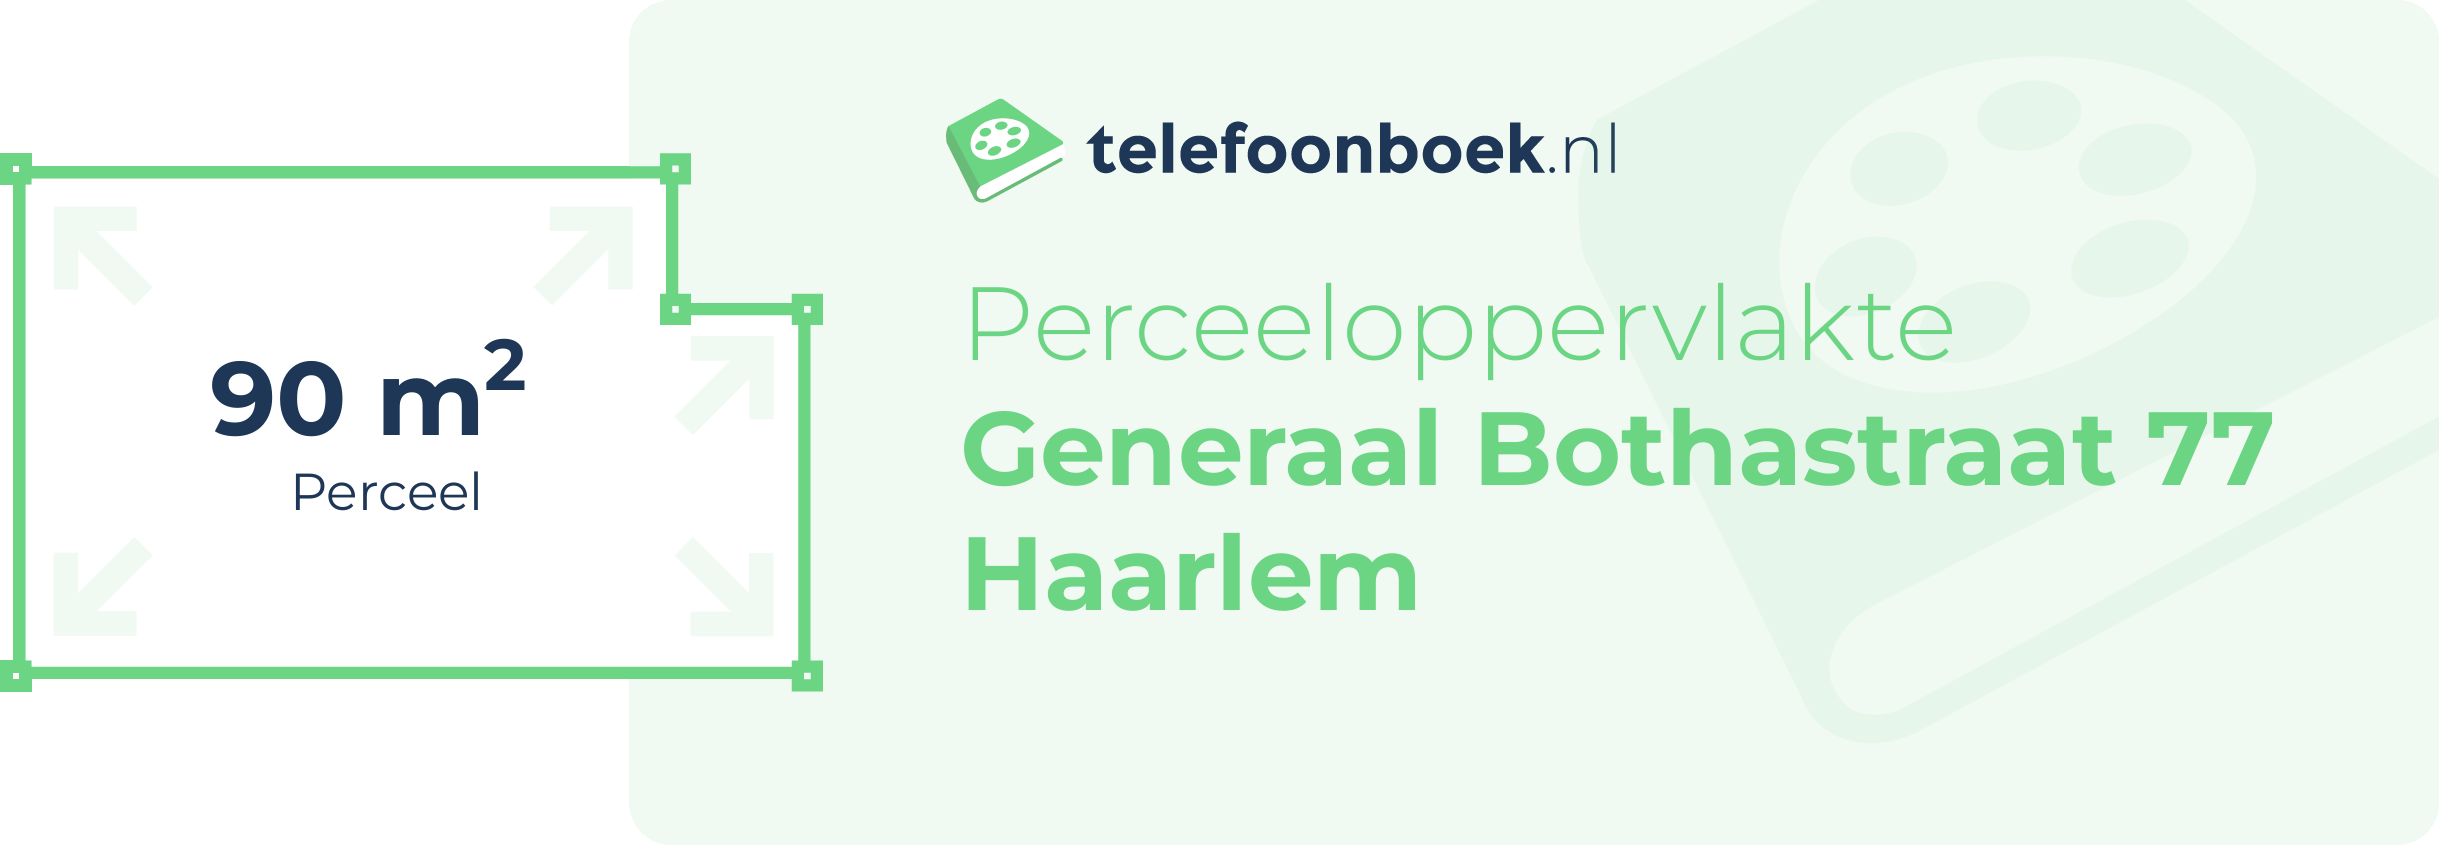 Perceeloppervlakte Generaal Bothastraat 77 Haarlem